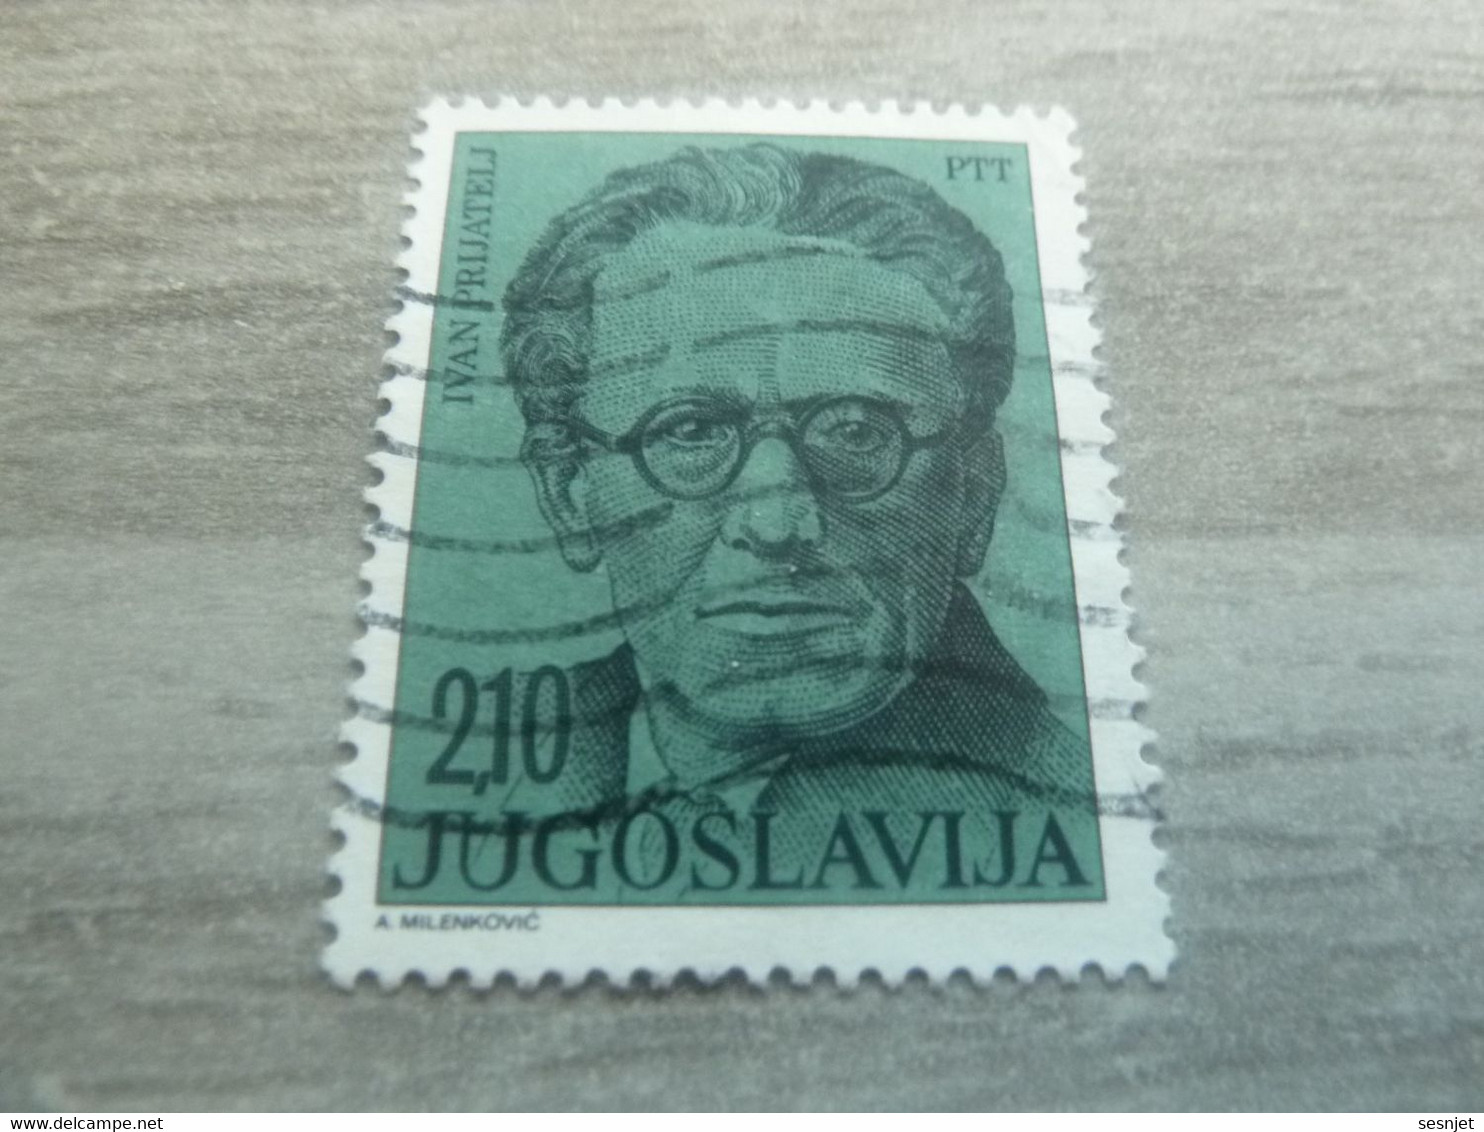 Ptt - Jugoslavija - Ivan Prijatelj - Val 2.10 - Bleu-vert - Oblitéré - - Usati